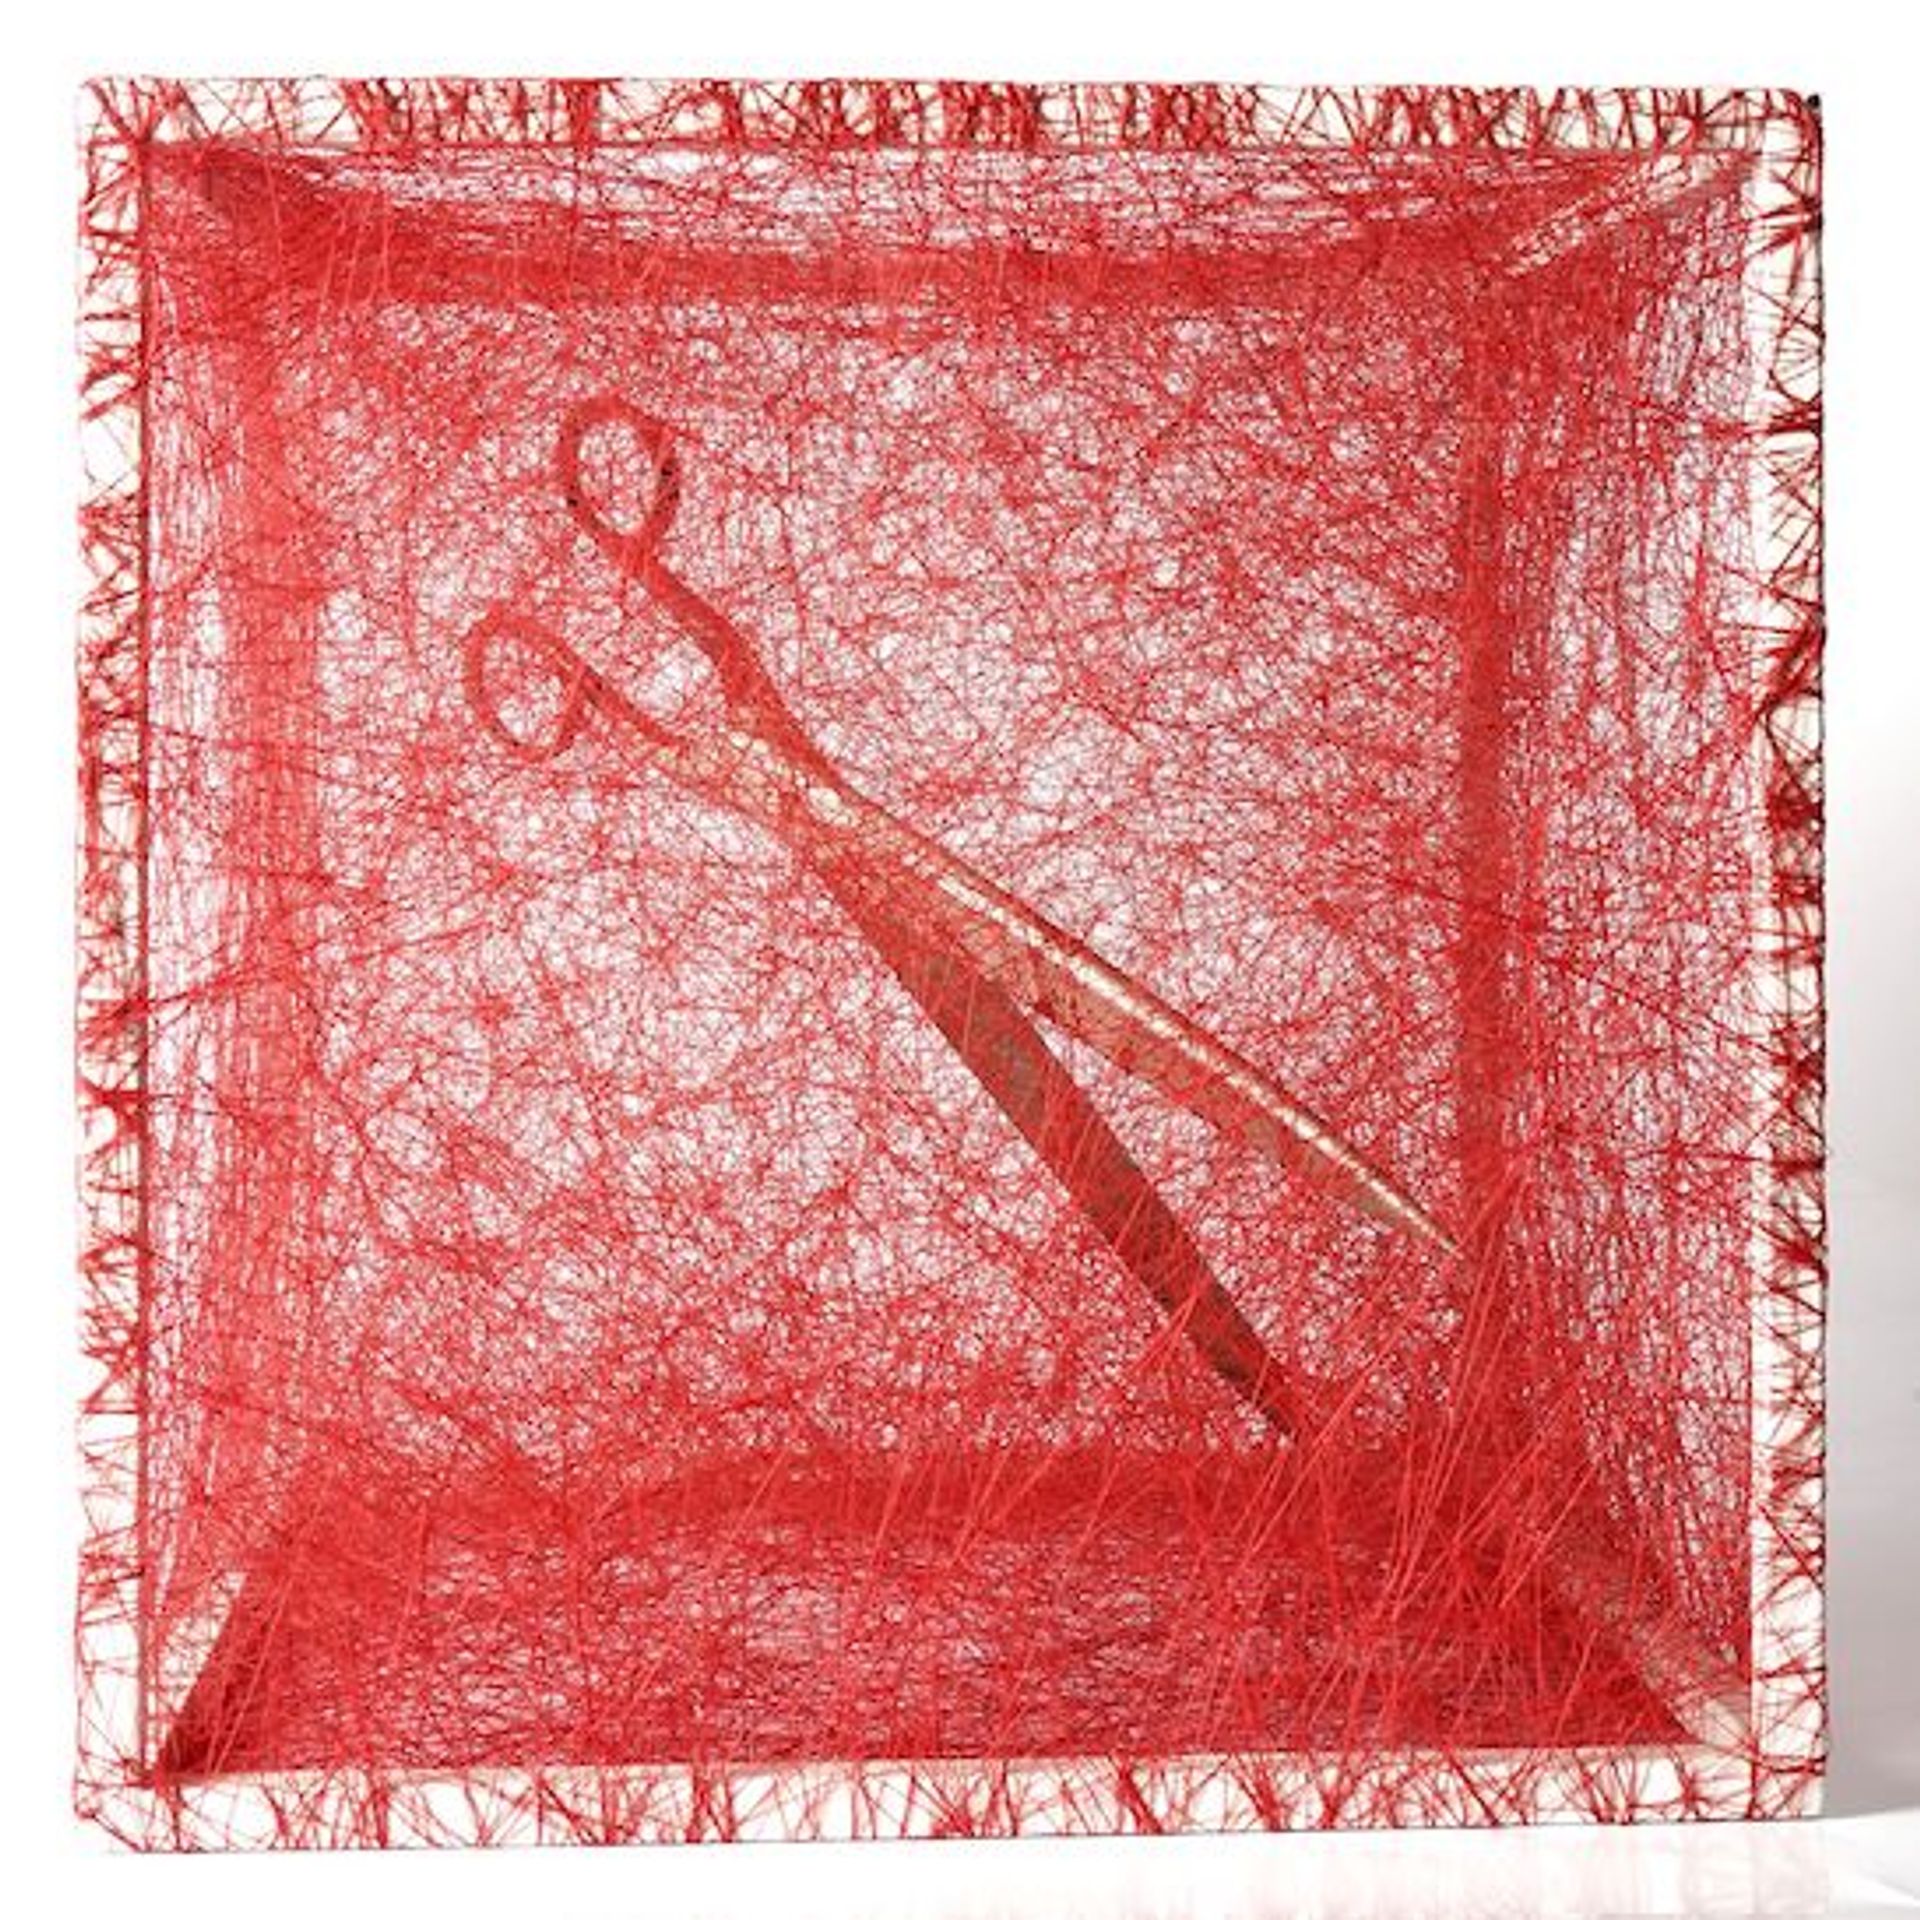 Chiharu Shiota, State of Being (scissors), 2013, métal, ciseaux et fil rouge, est. 50 000-80 000 euros. © Art Research Paris